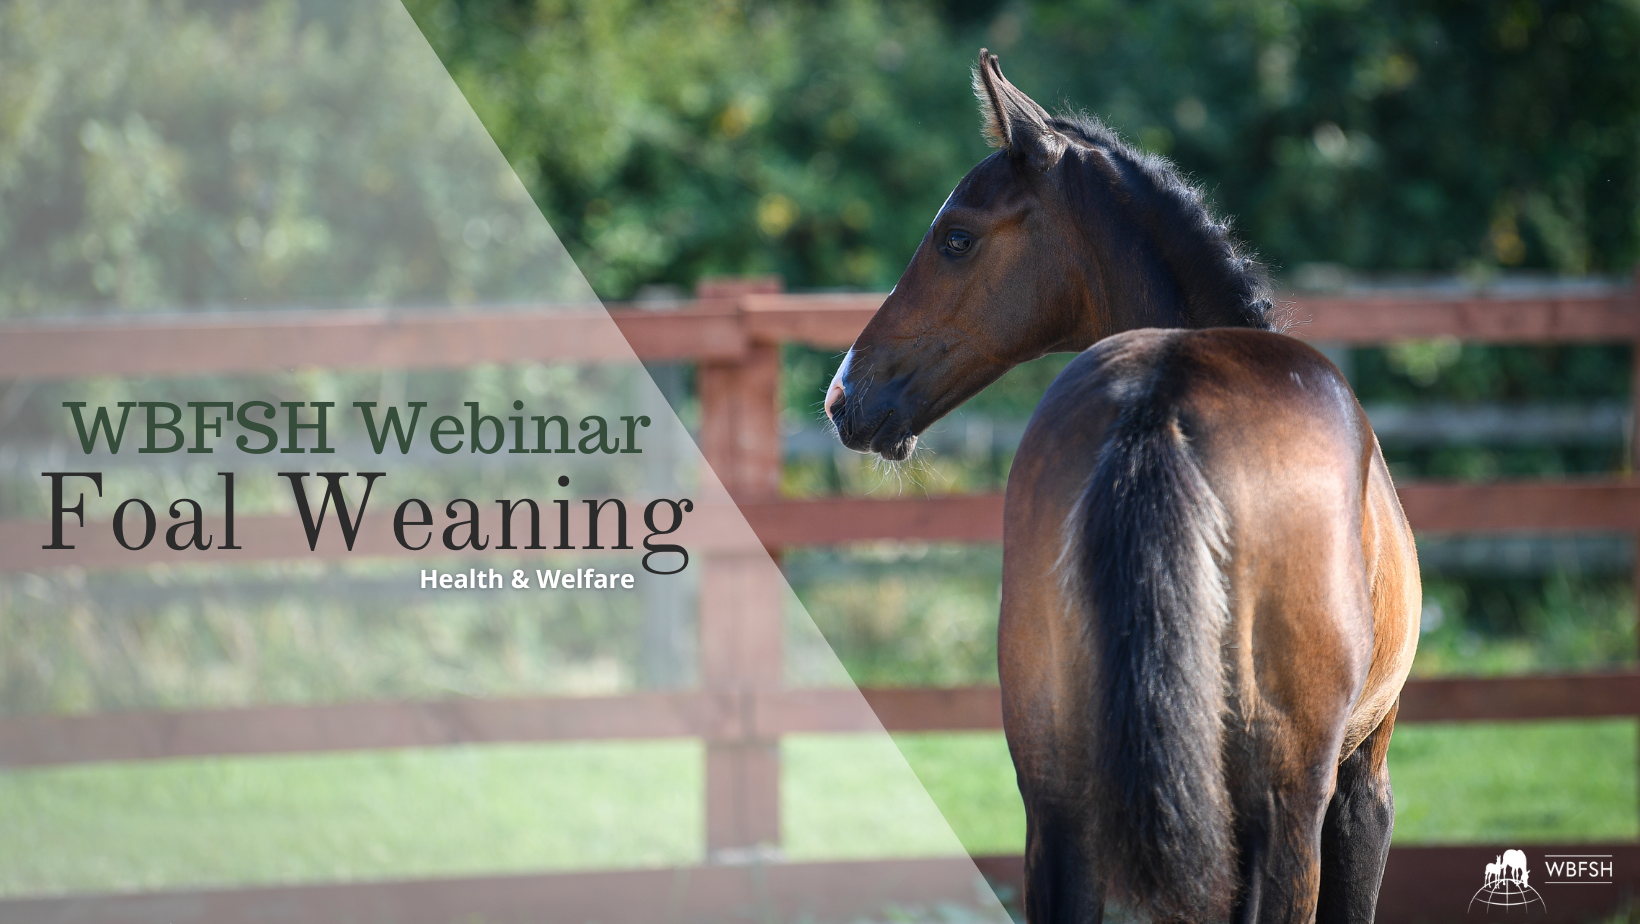 WBFSH Webinar on Weaning Foals